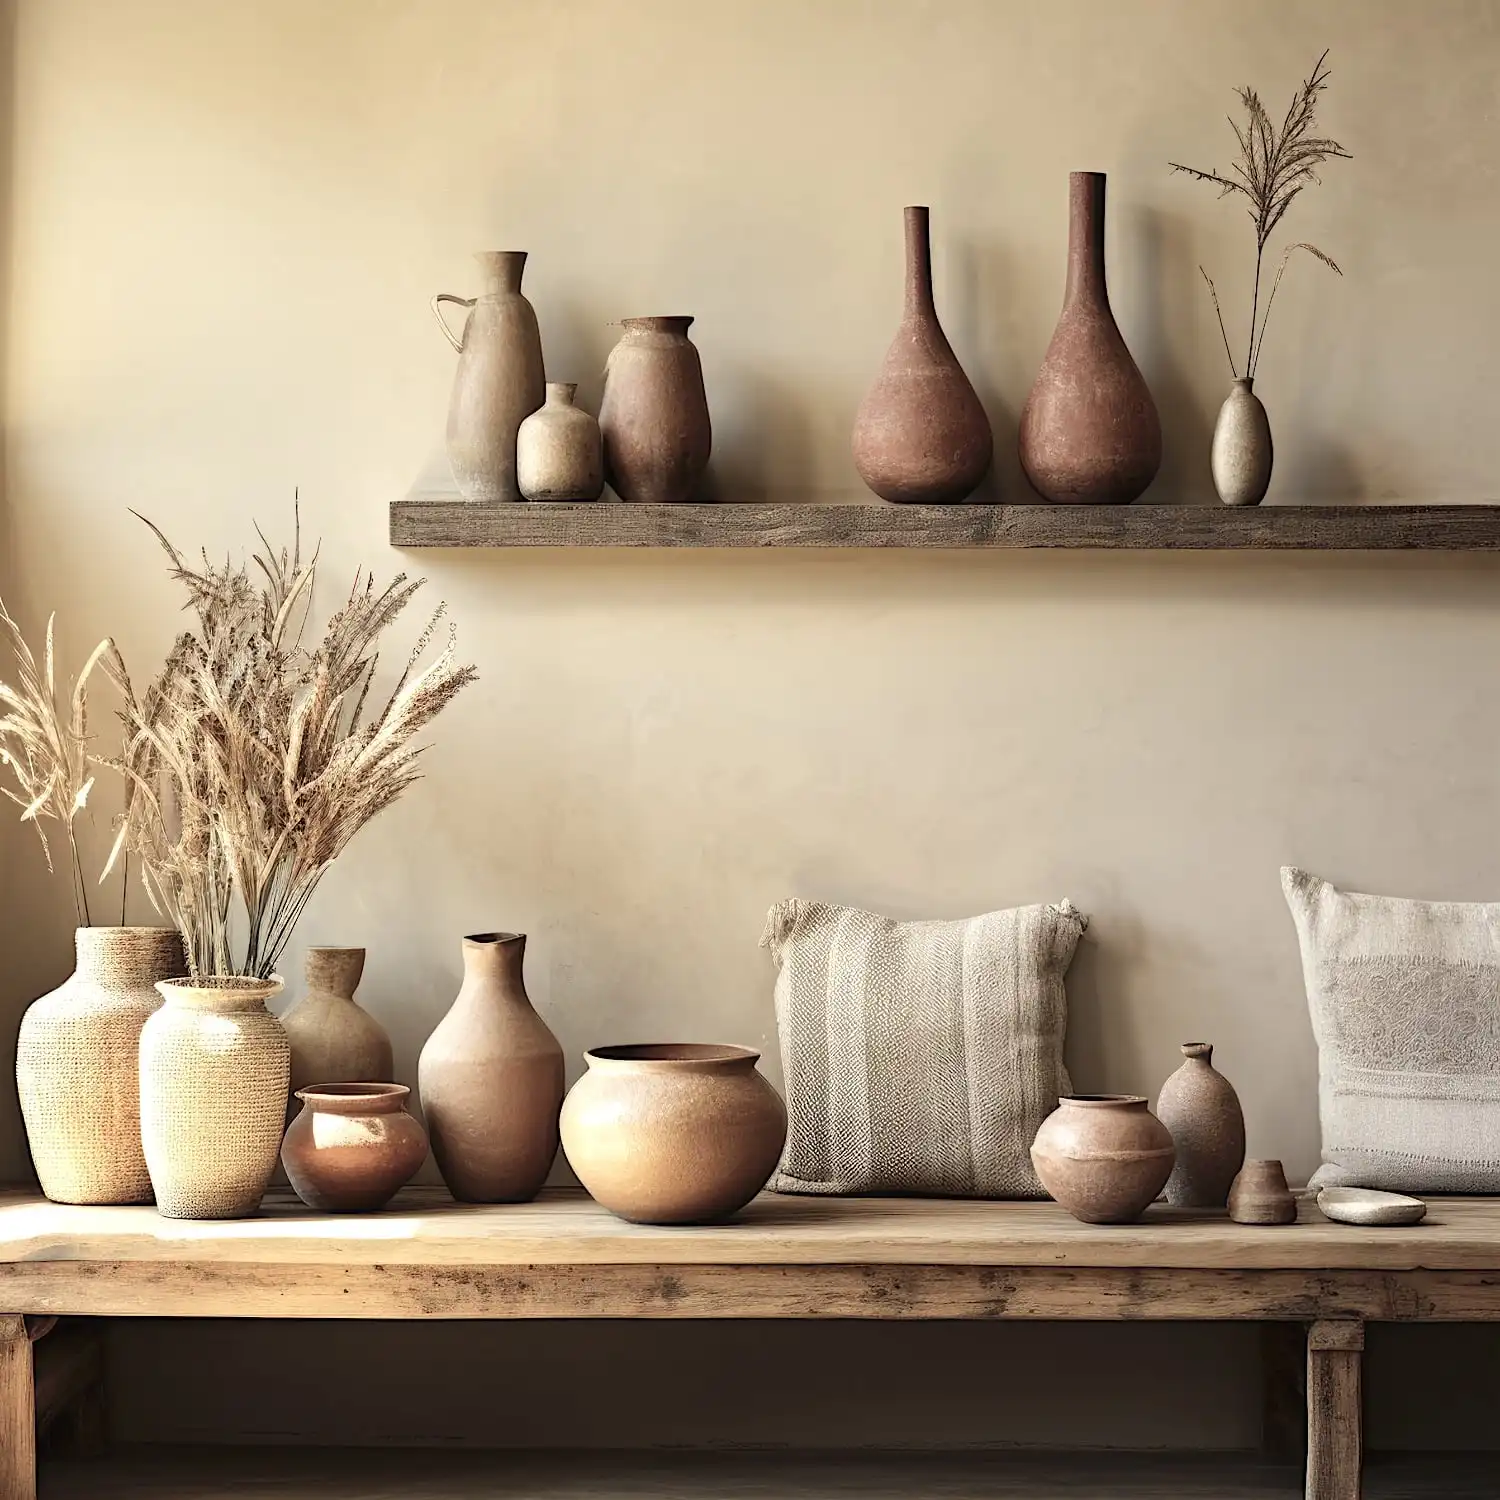 Un banc en bois avec un assortiment de poteries aux tons terreux et de plantes séchées est placé contre un mur beige. Au-dessus, une étagère en bois ancien contient des poteries supplémentaires et une petite plante. Deux coussins reposent sur le banc.